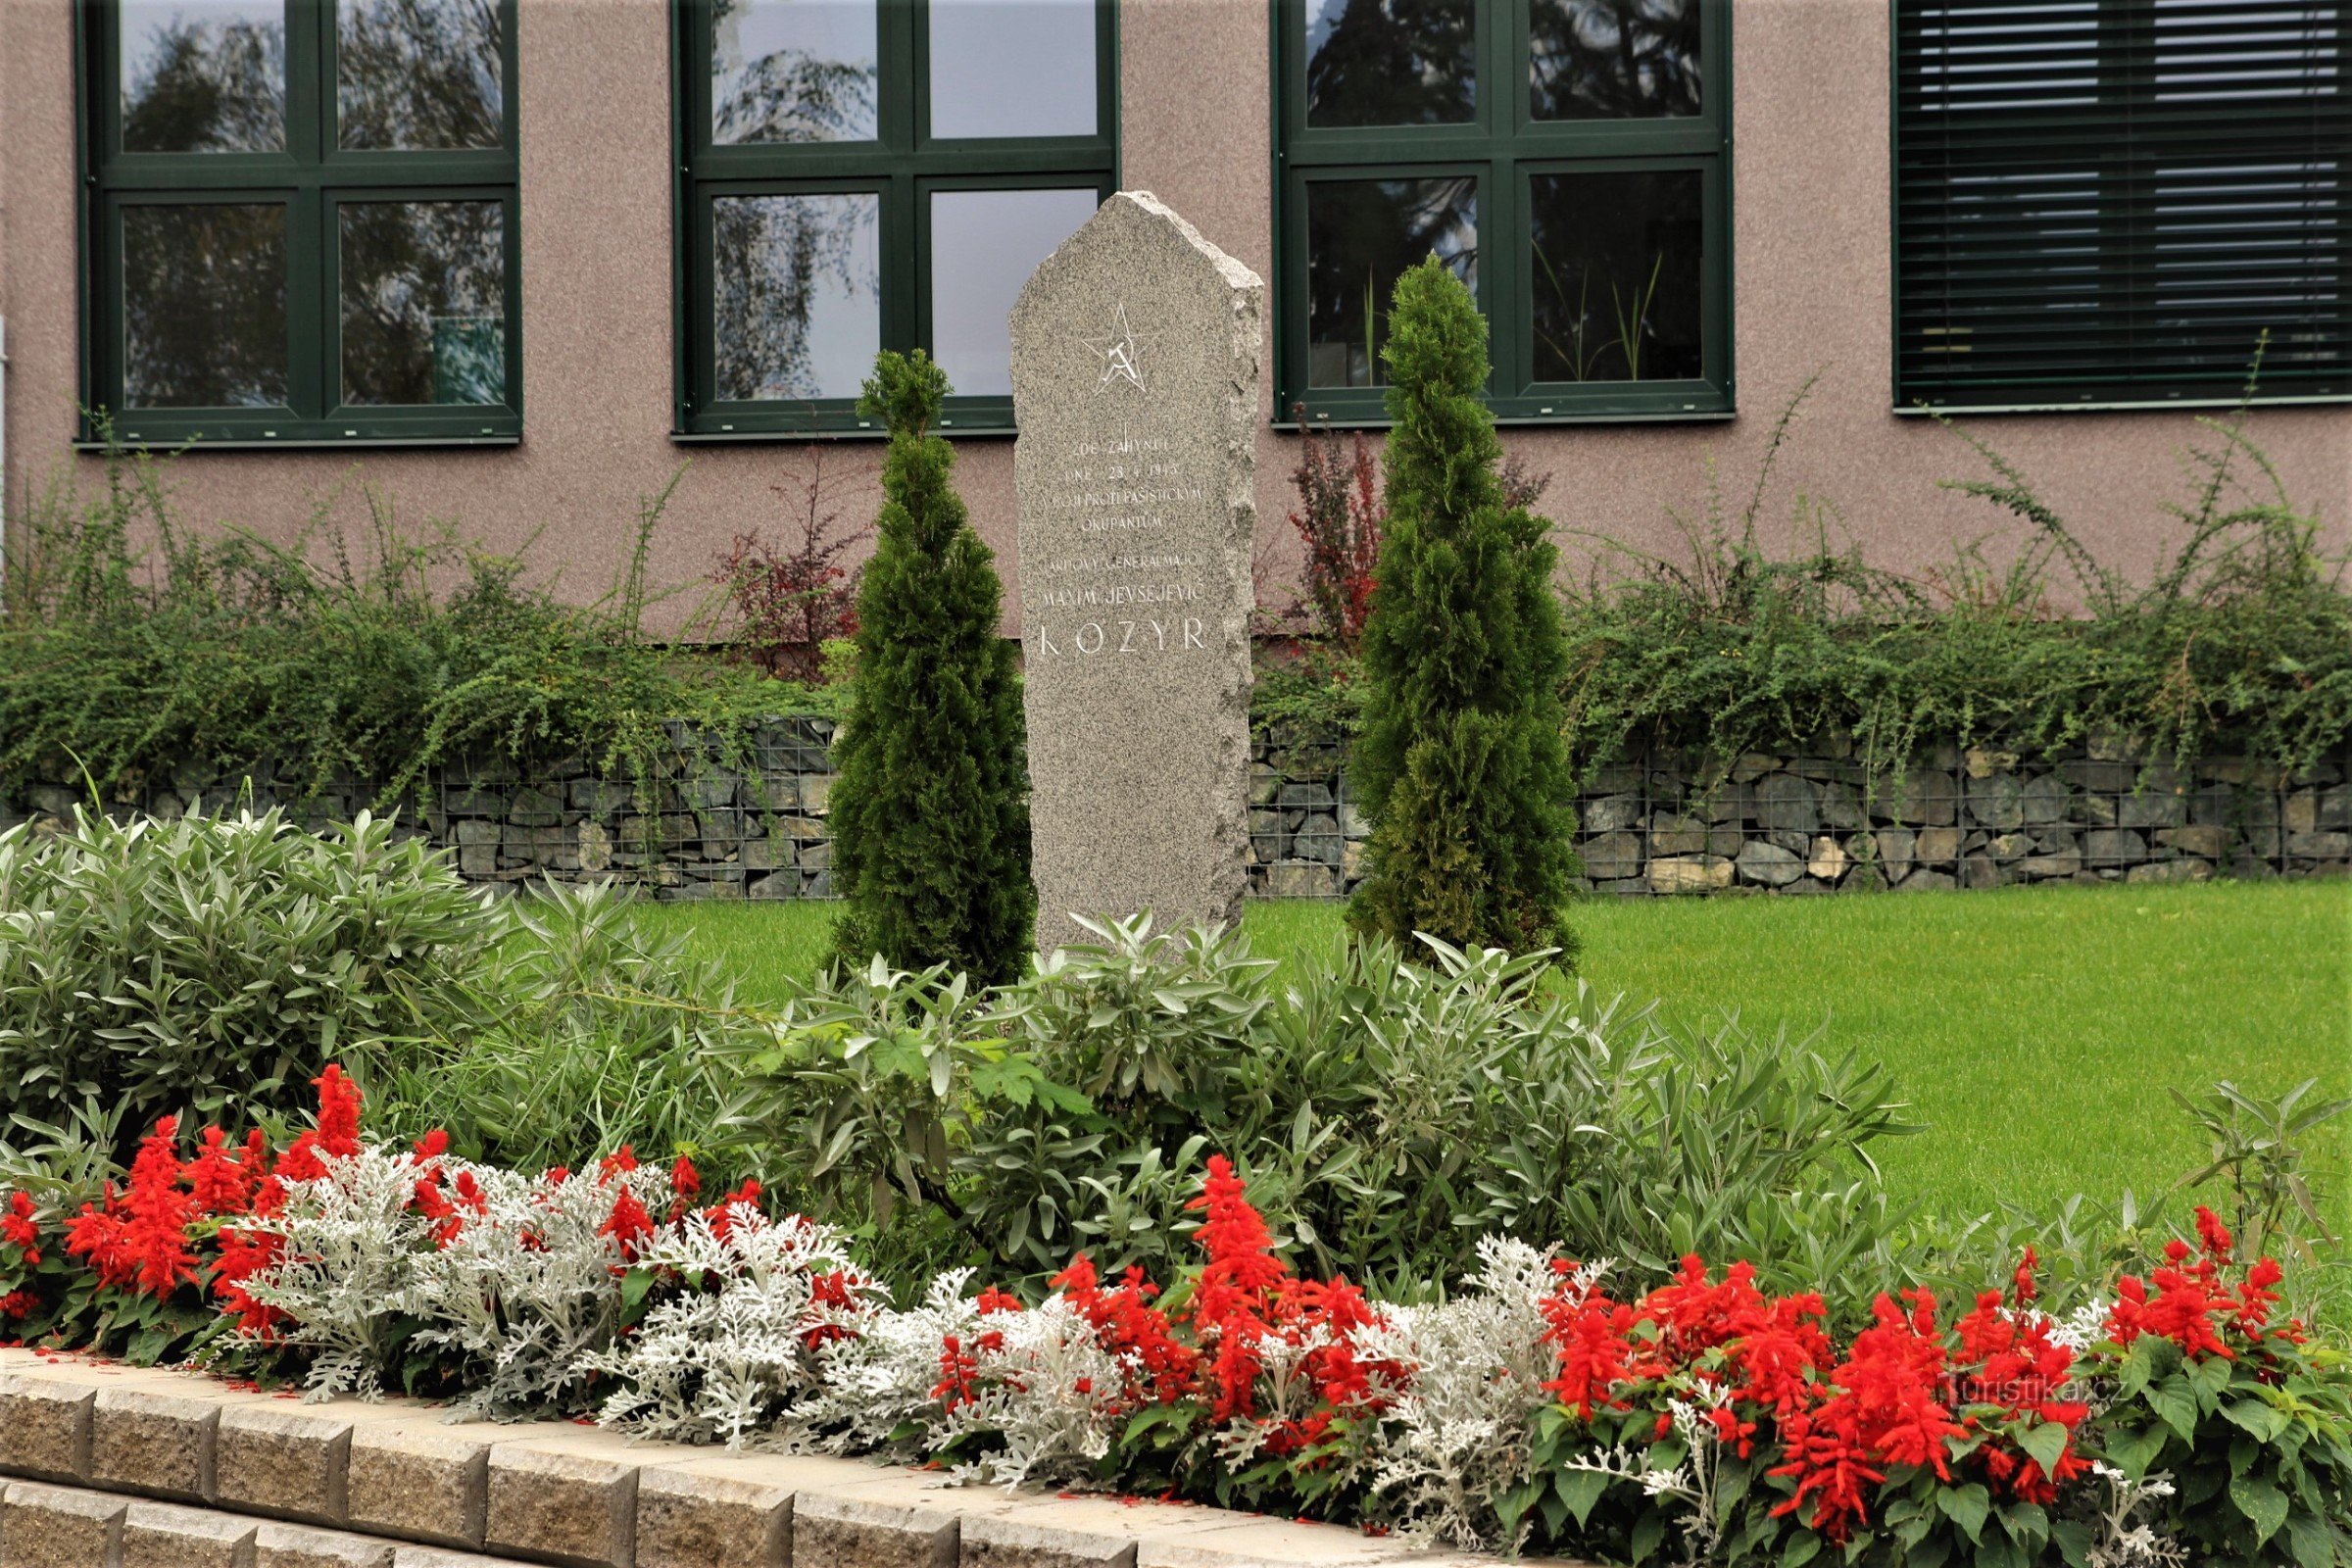 Monumento al General Kozyr frente al edificio de la Escuela Secundaria de Horticultura